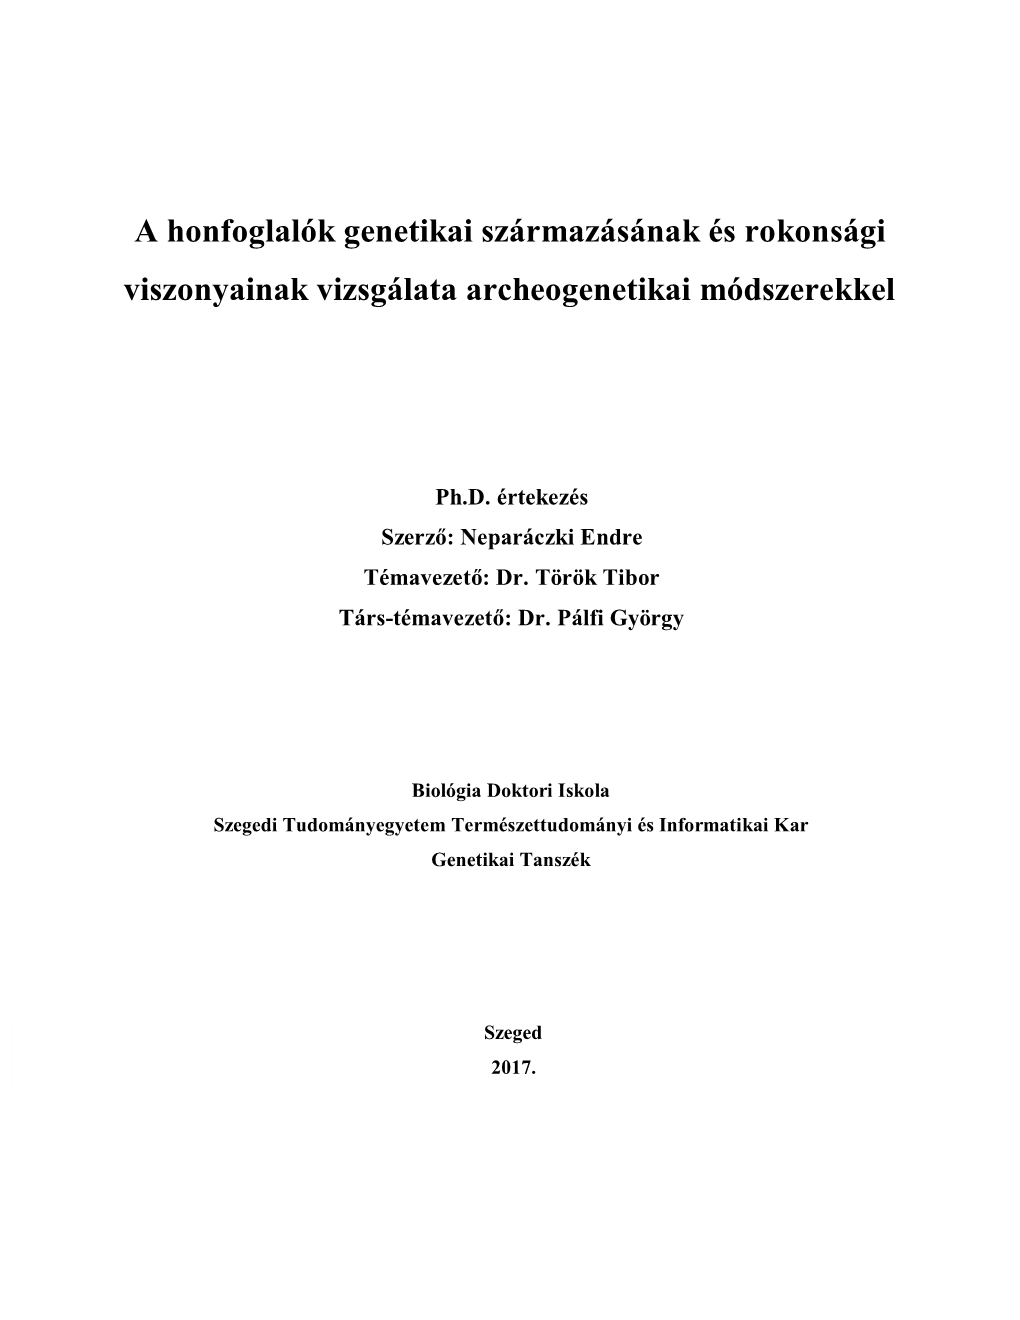 A Honfoglalók Genetikai Származásának És Rokonsági Viszonyainak Vizsgálata Archeogenetikai Módszerekkel